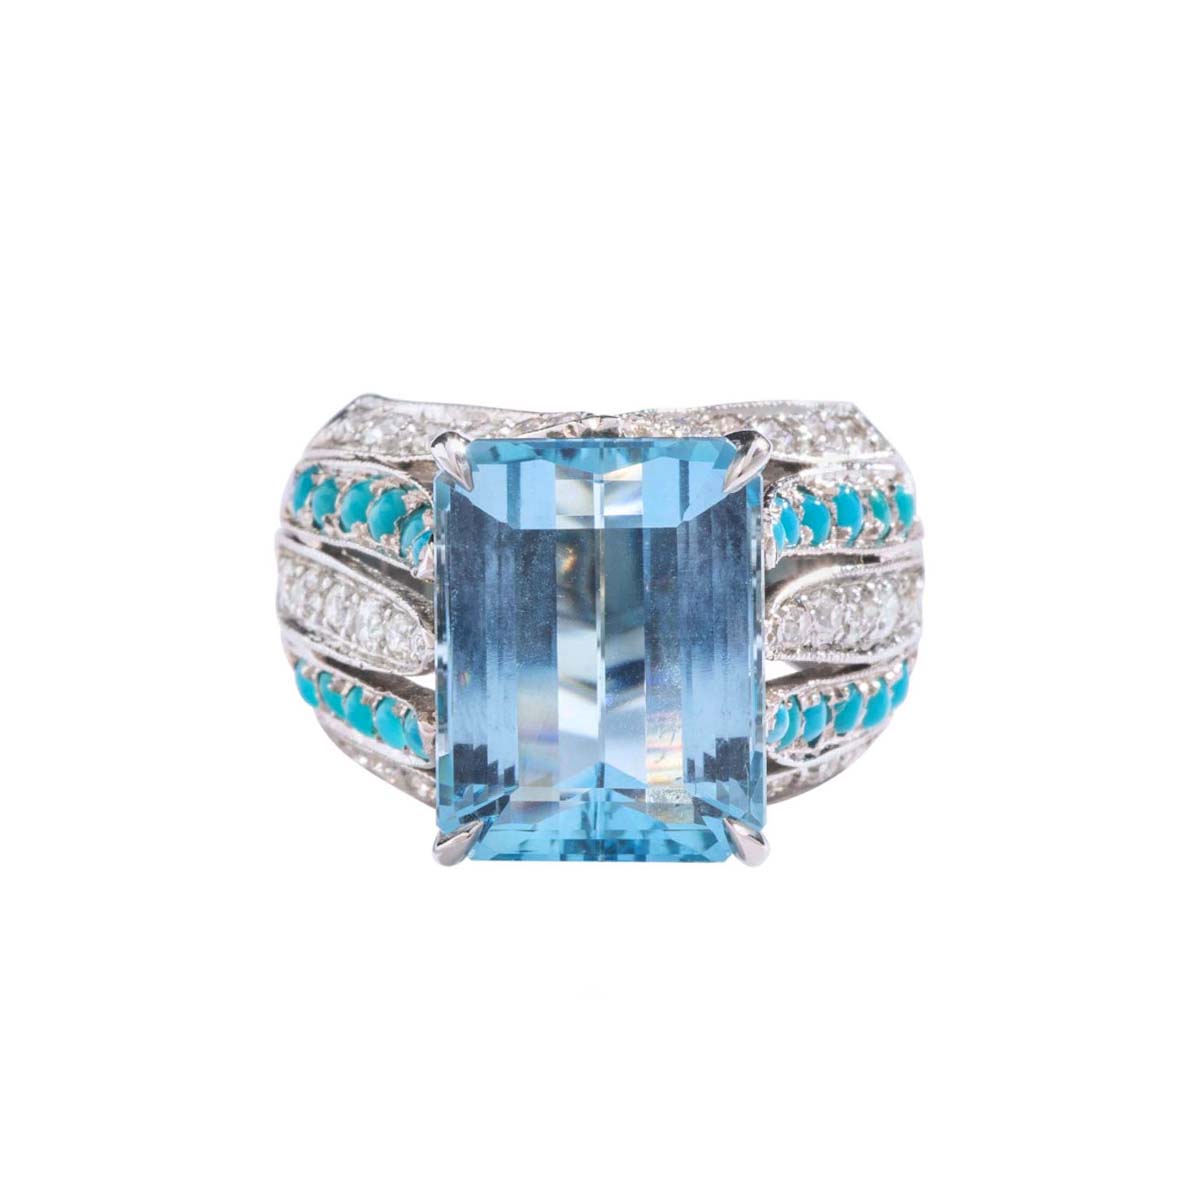 9.75 carat Aquamarine centering a diamond and cabochon turquoise platinum ring. Circa 1970.